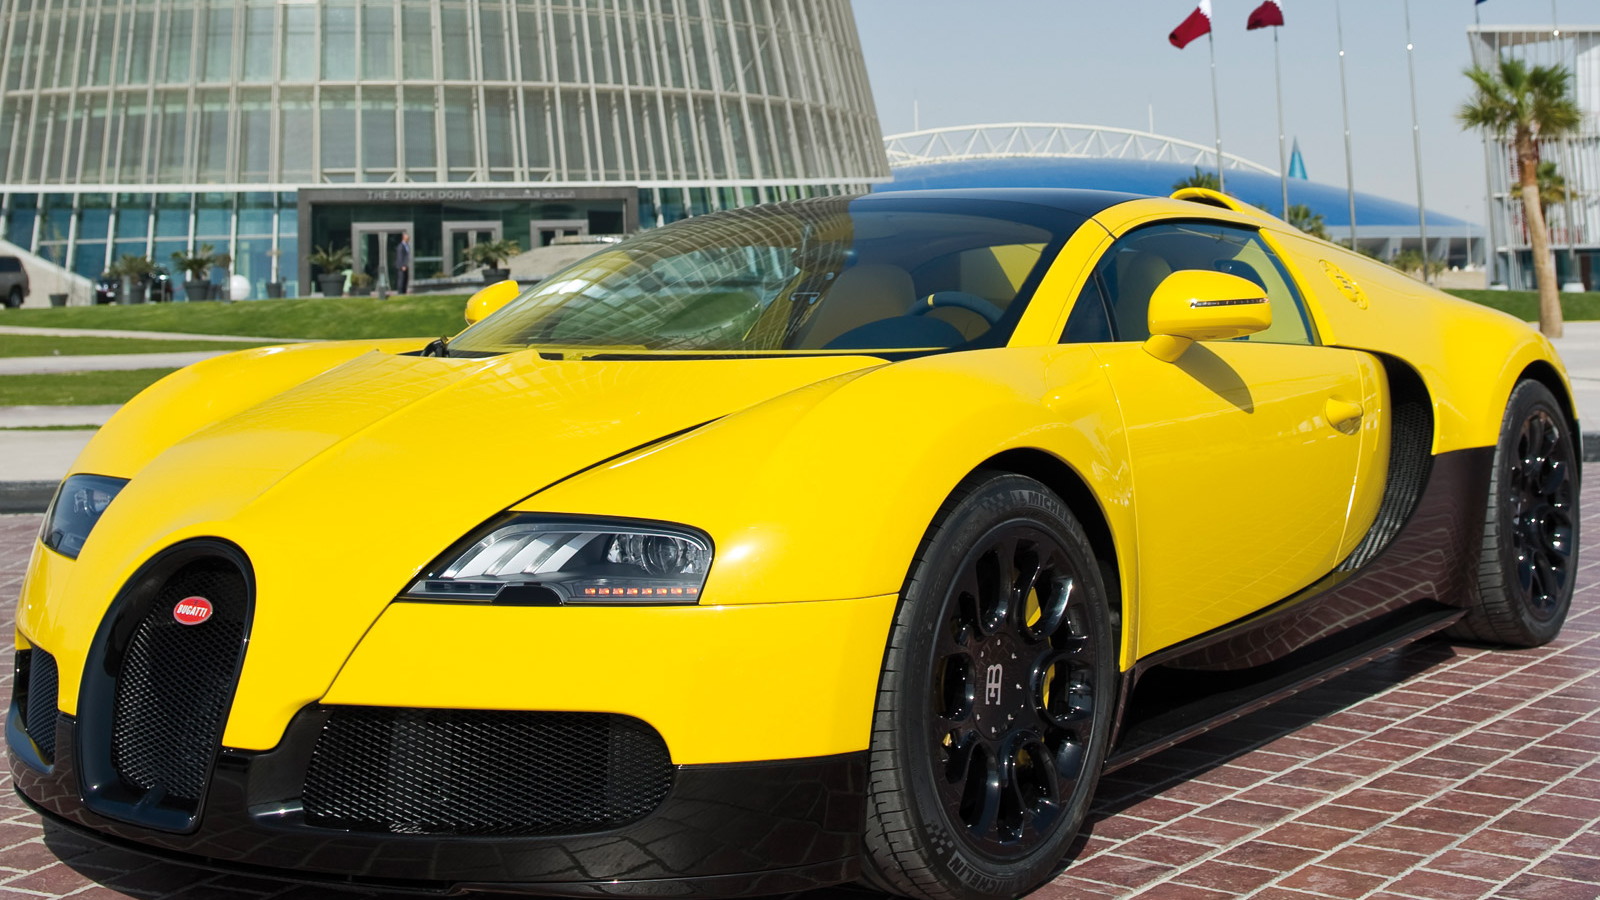 Bugatti Veyron Grand Sport special edition in Qatar